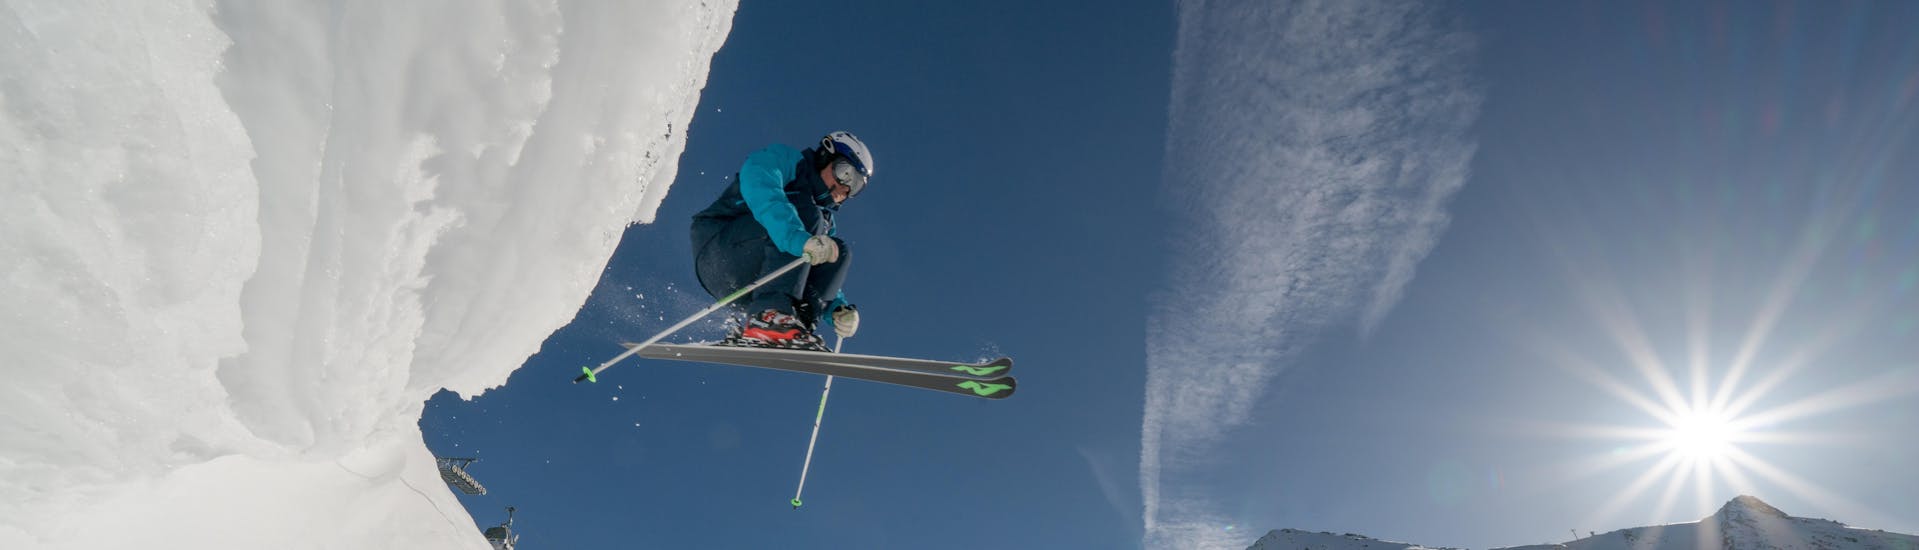 Privé Off-Piste skilessen voor alle niveaus.